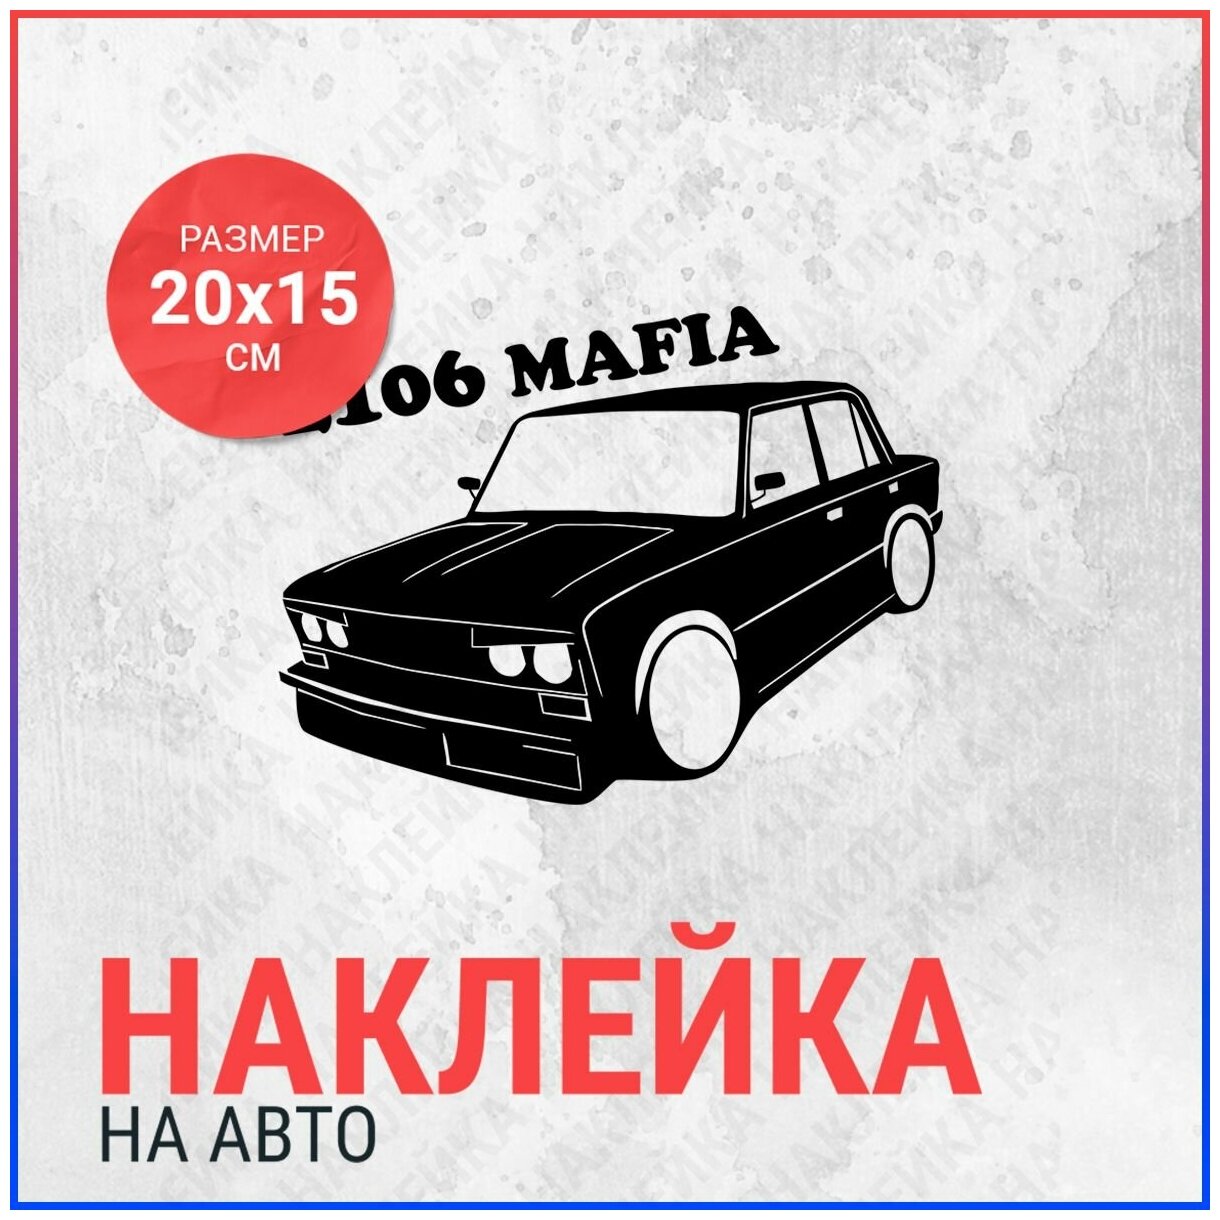 Наклейка на авто 20х15 2106 mafia